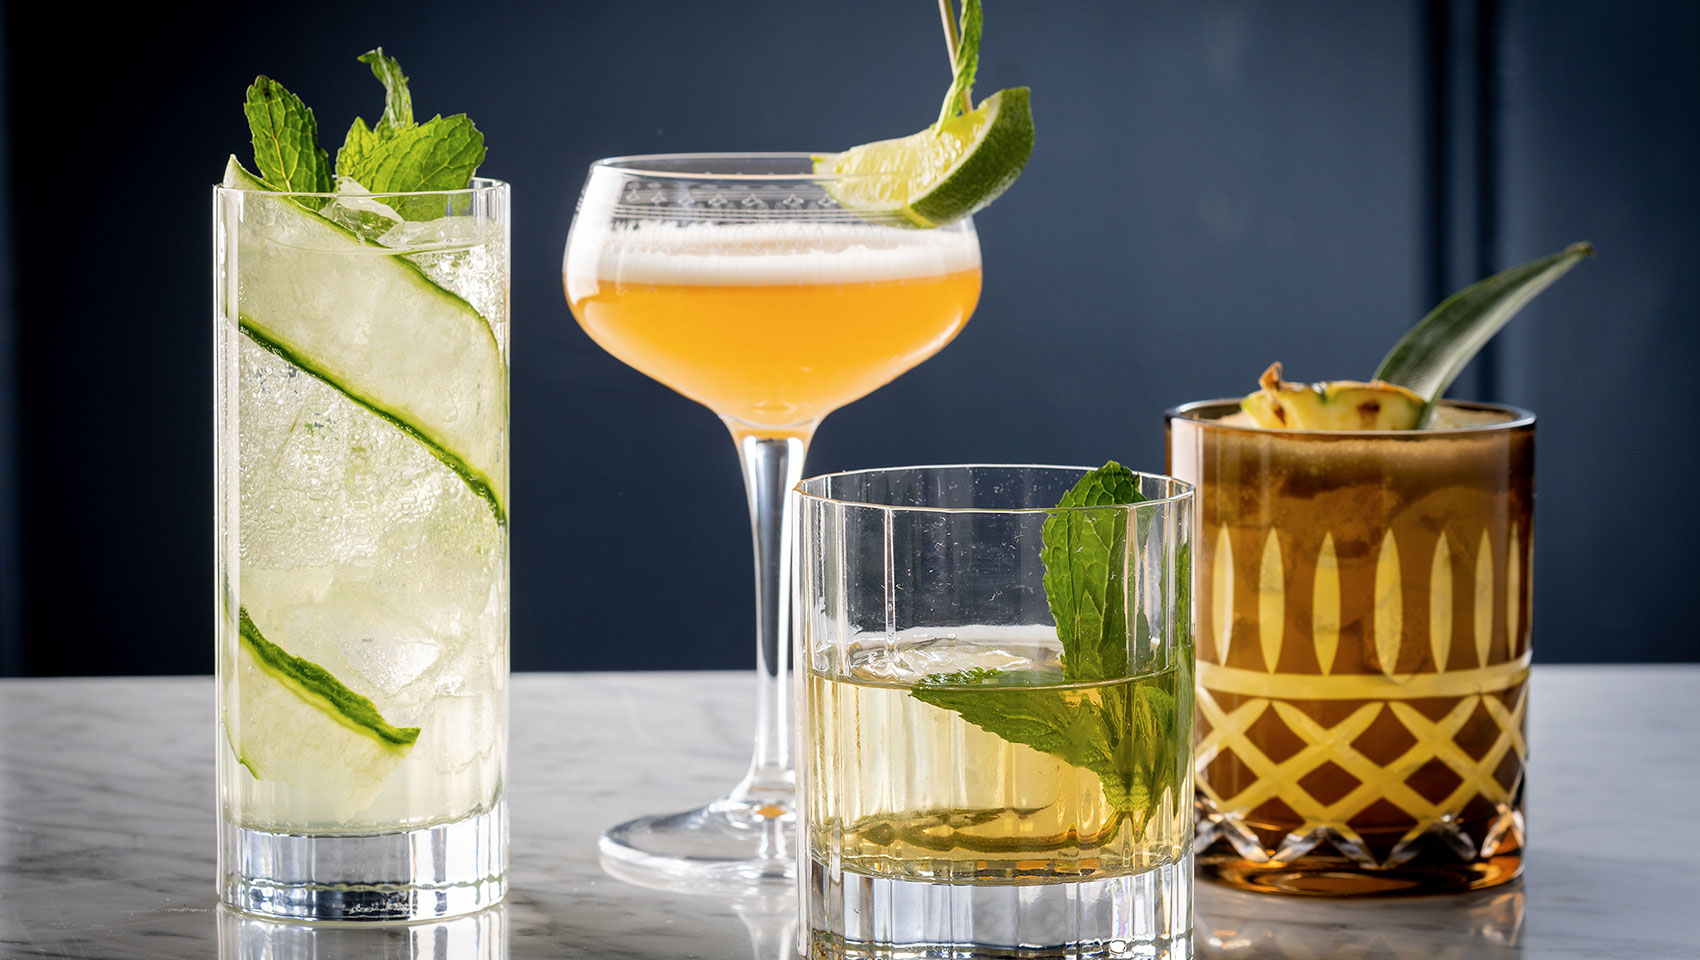 Bambara cocktails